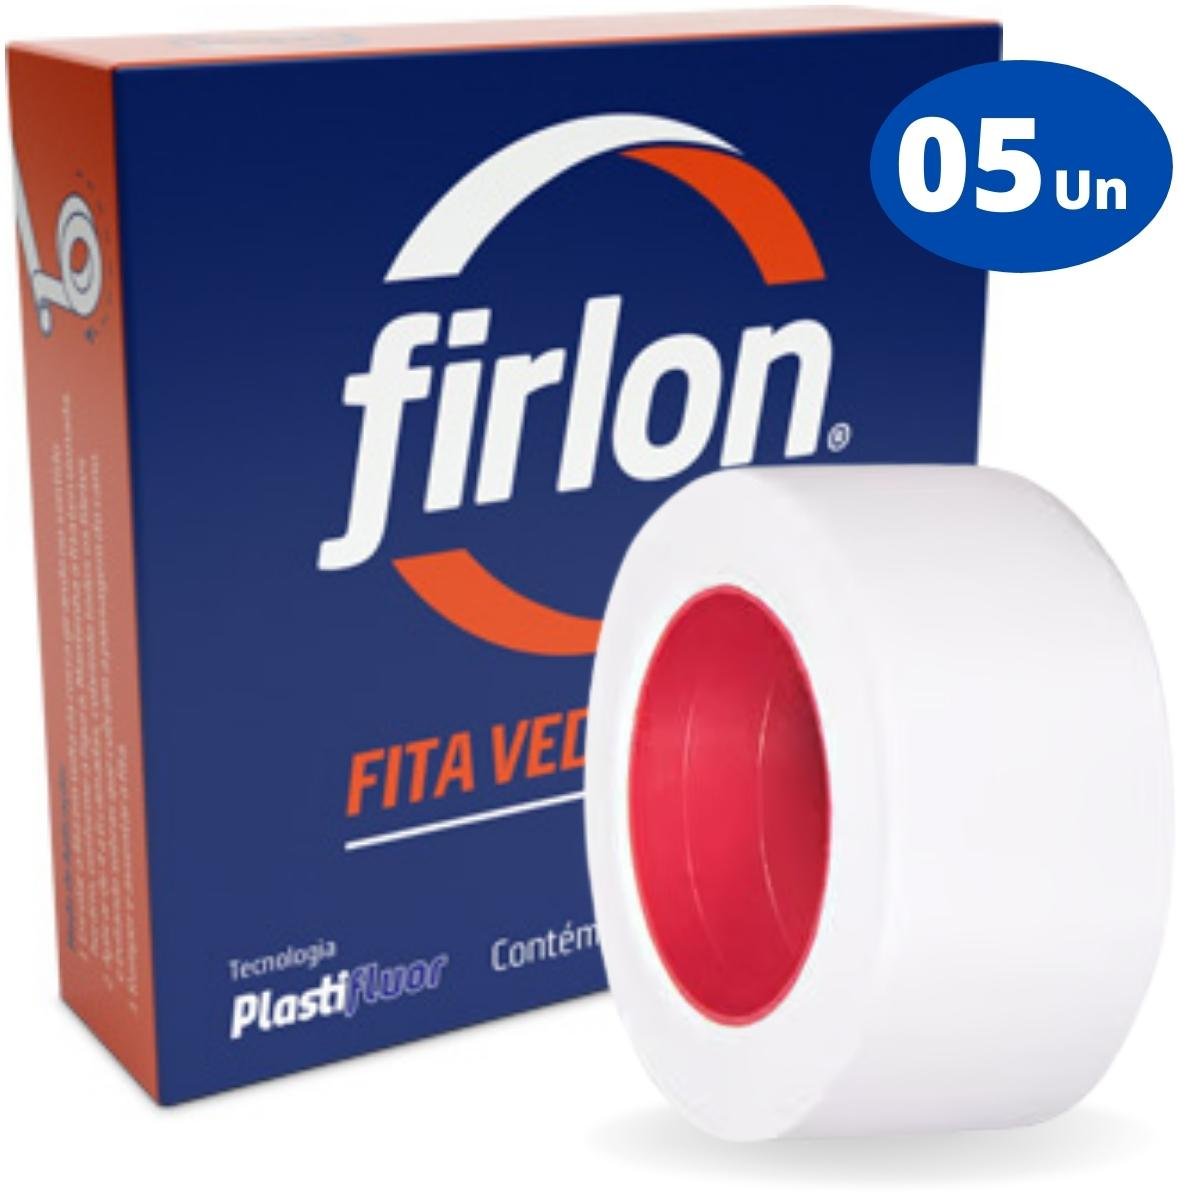 Fita Veda Rosca Teflon 12mm x 10m | Firlon | Kit 05 Un - 1